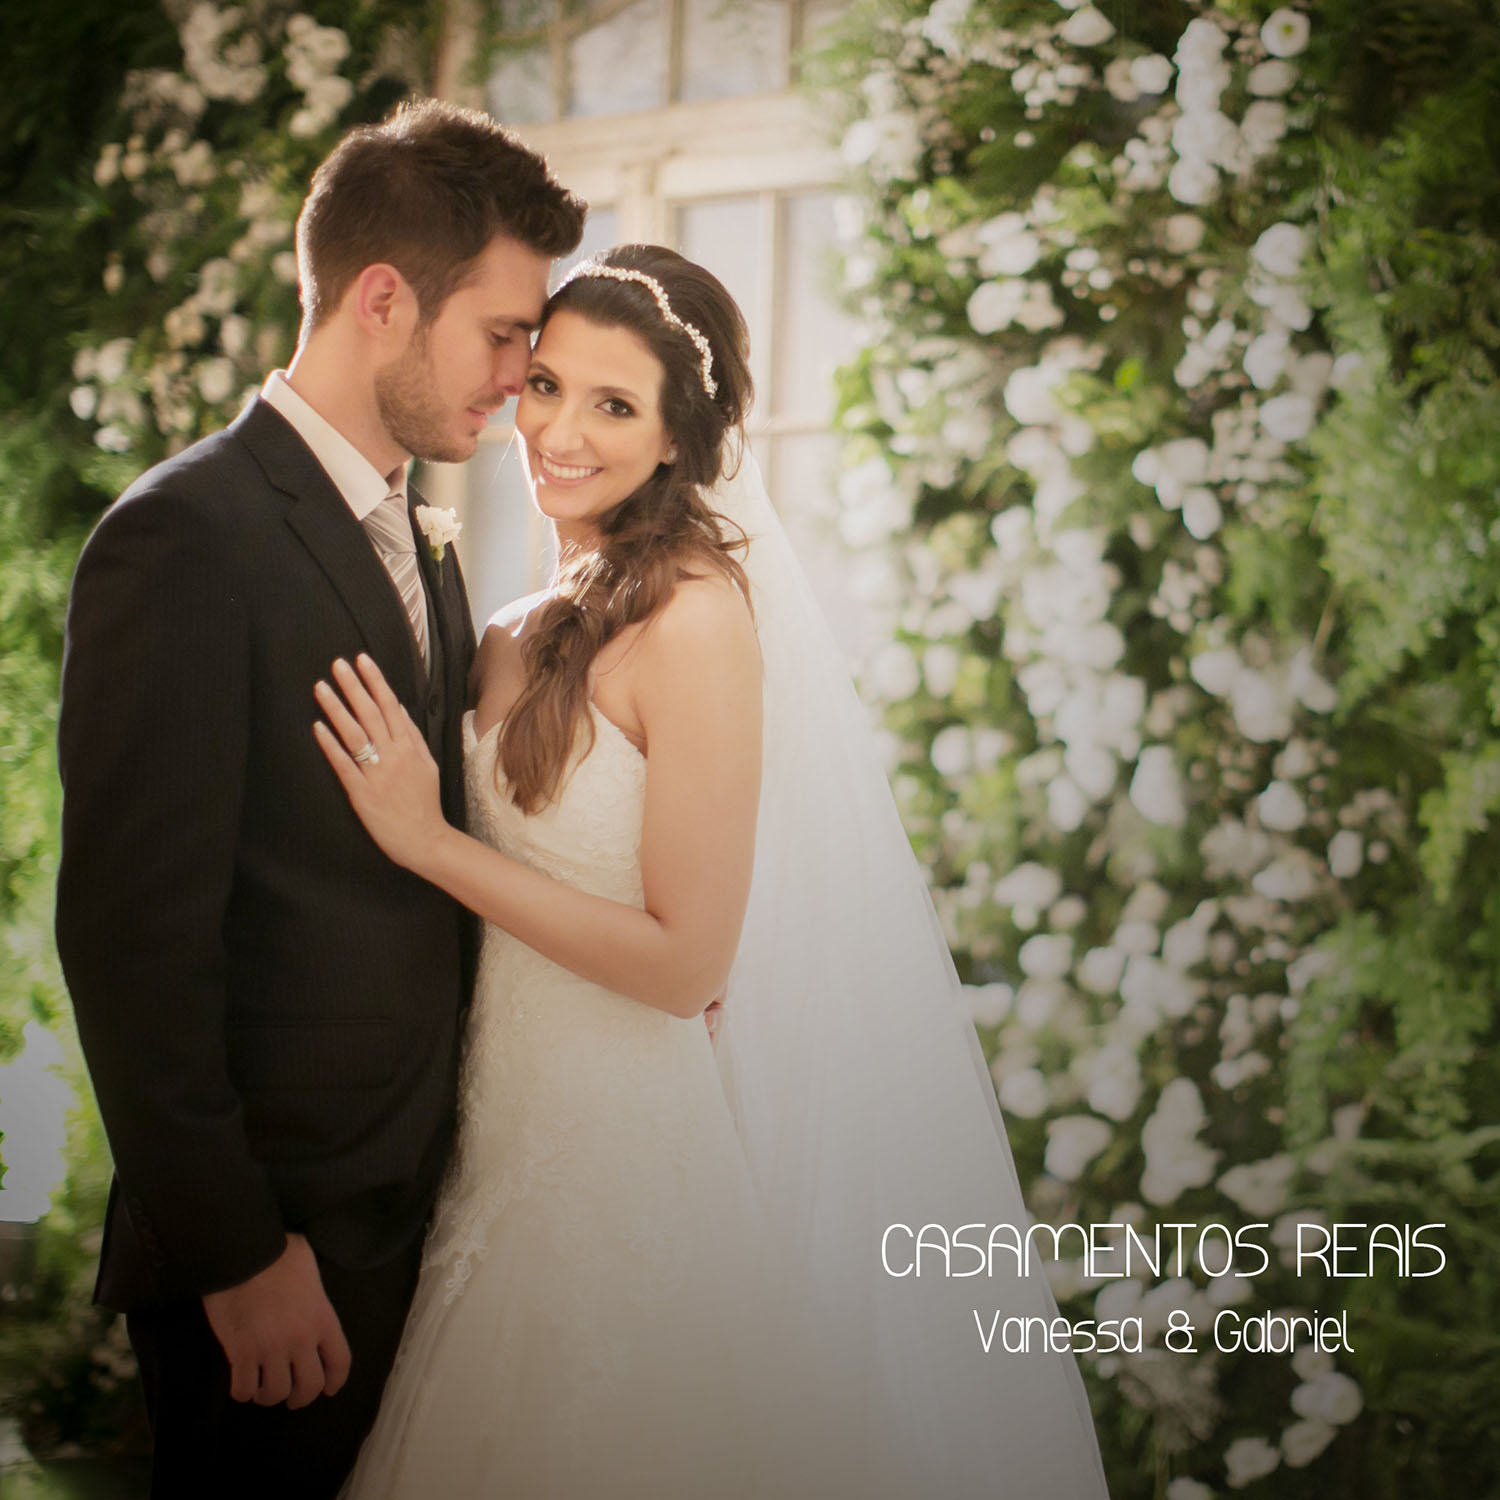 Casamentos Reais - Vanessa e Gabriel 28.02.15